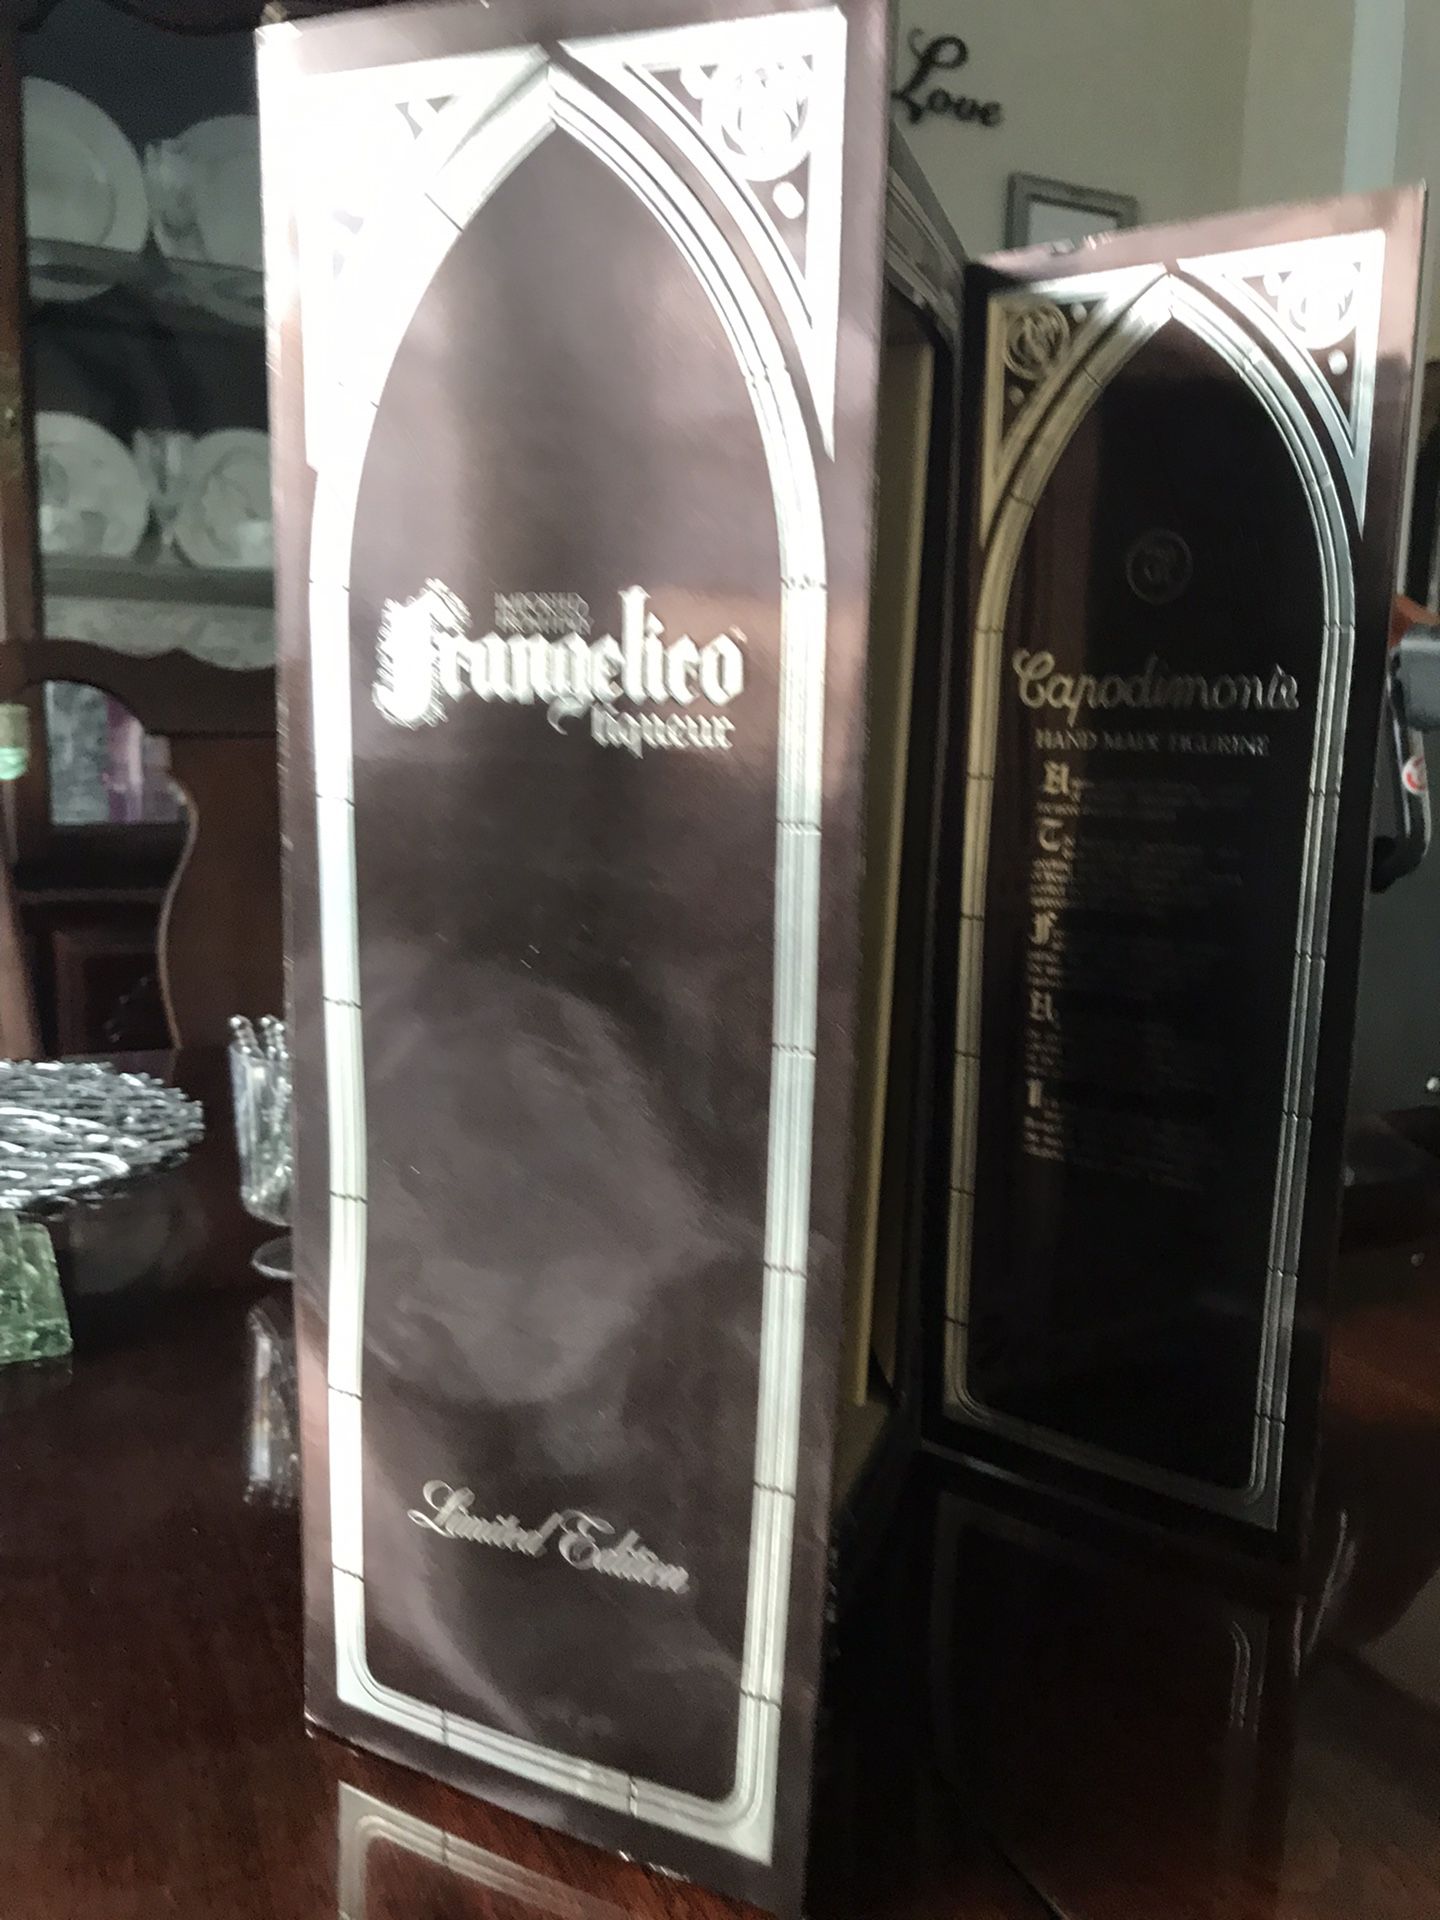  Vintage Capodimonte *LIMITED *Frangelico "MONK" Liqueur Bottle 